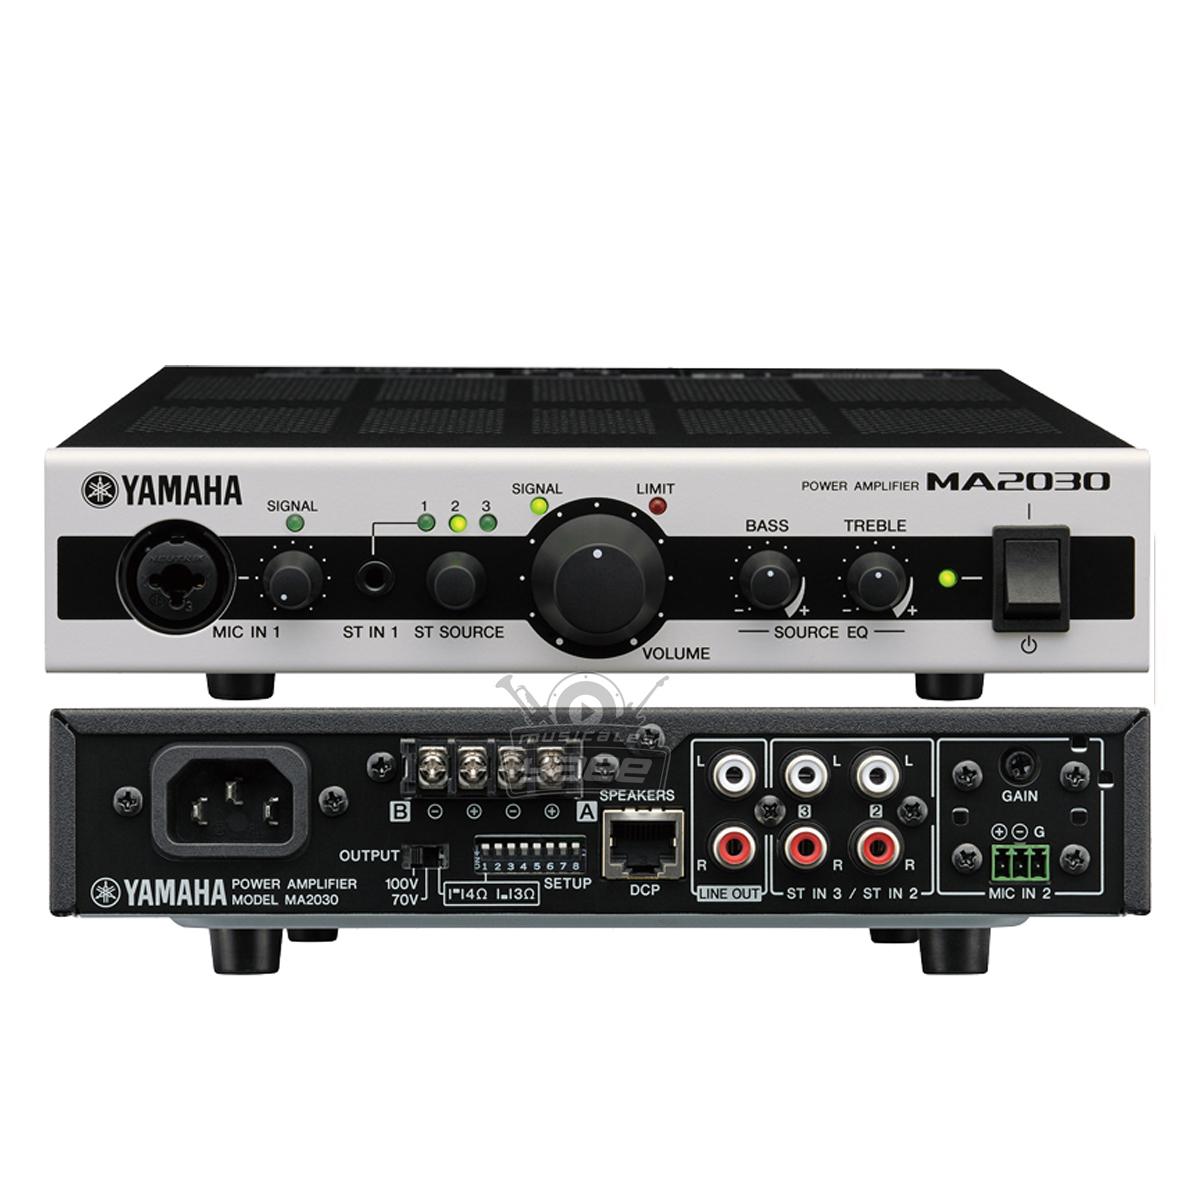 Mezcladora-Amplificadora Yamaha con DSP 2 canales-1 zona MA2030A